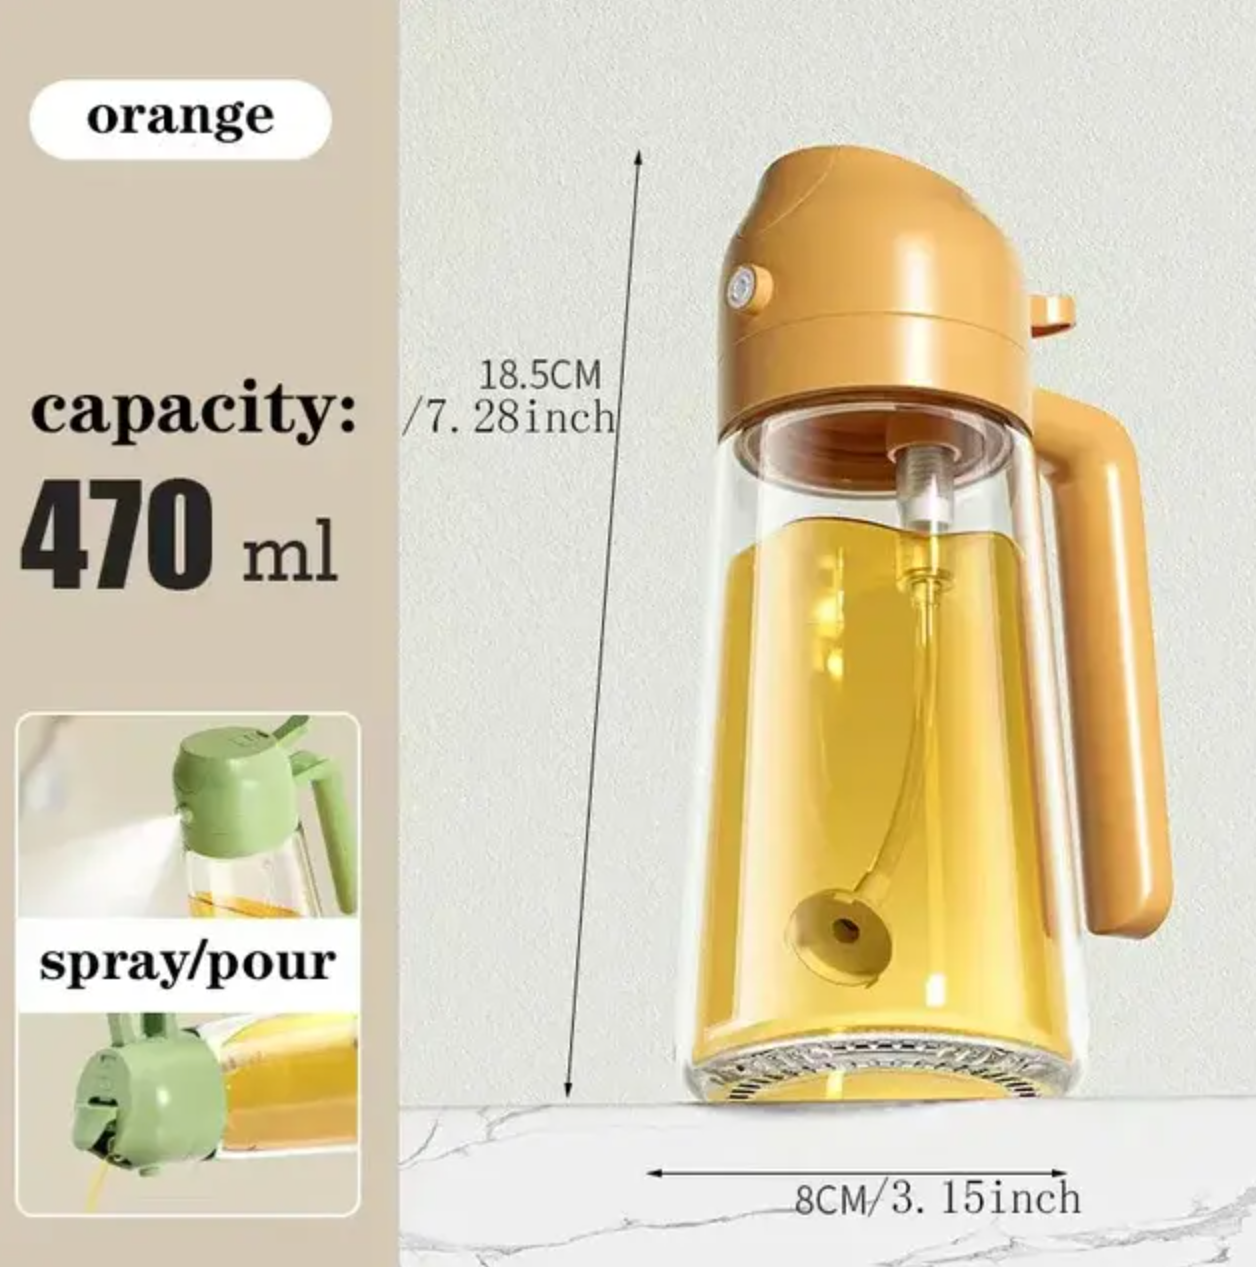 470ml Glass Spray Oil Sprayer Bottle: A Versatile 2-in-1 Oil Dispenser